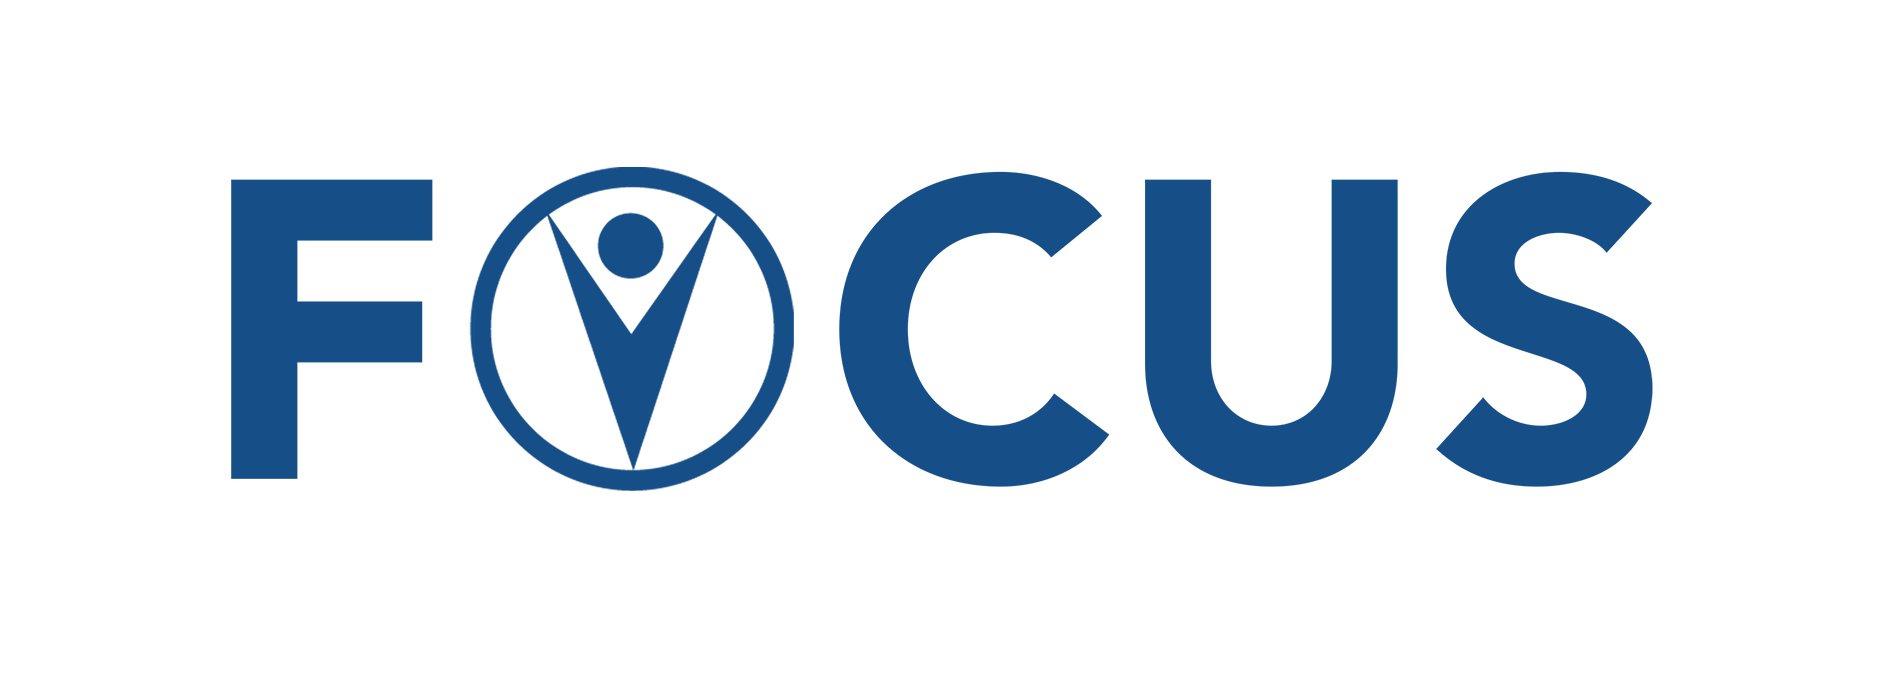 Focus Logo - focus logo - FOCUS